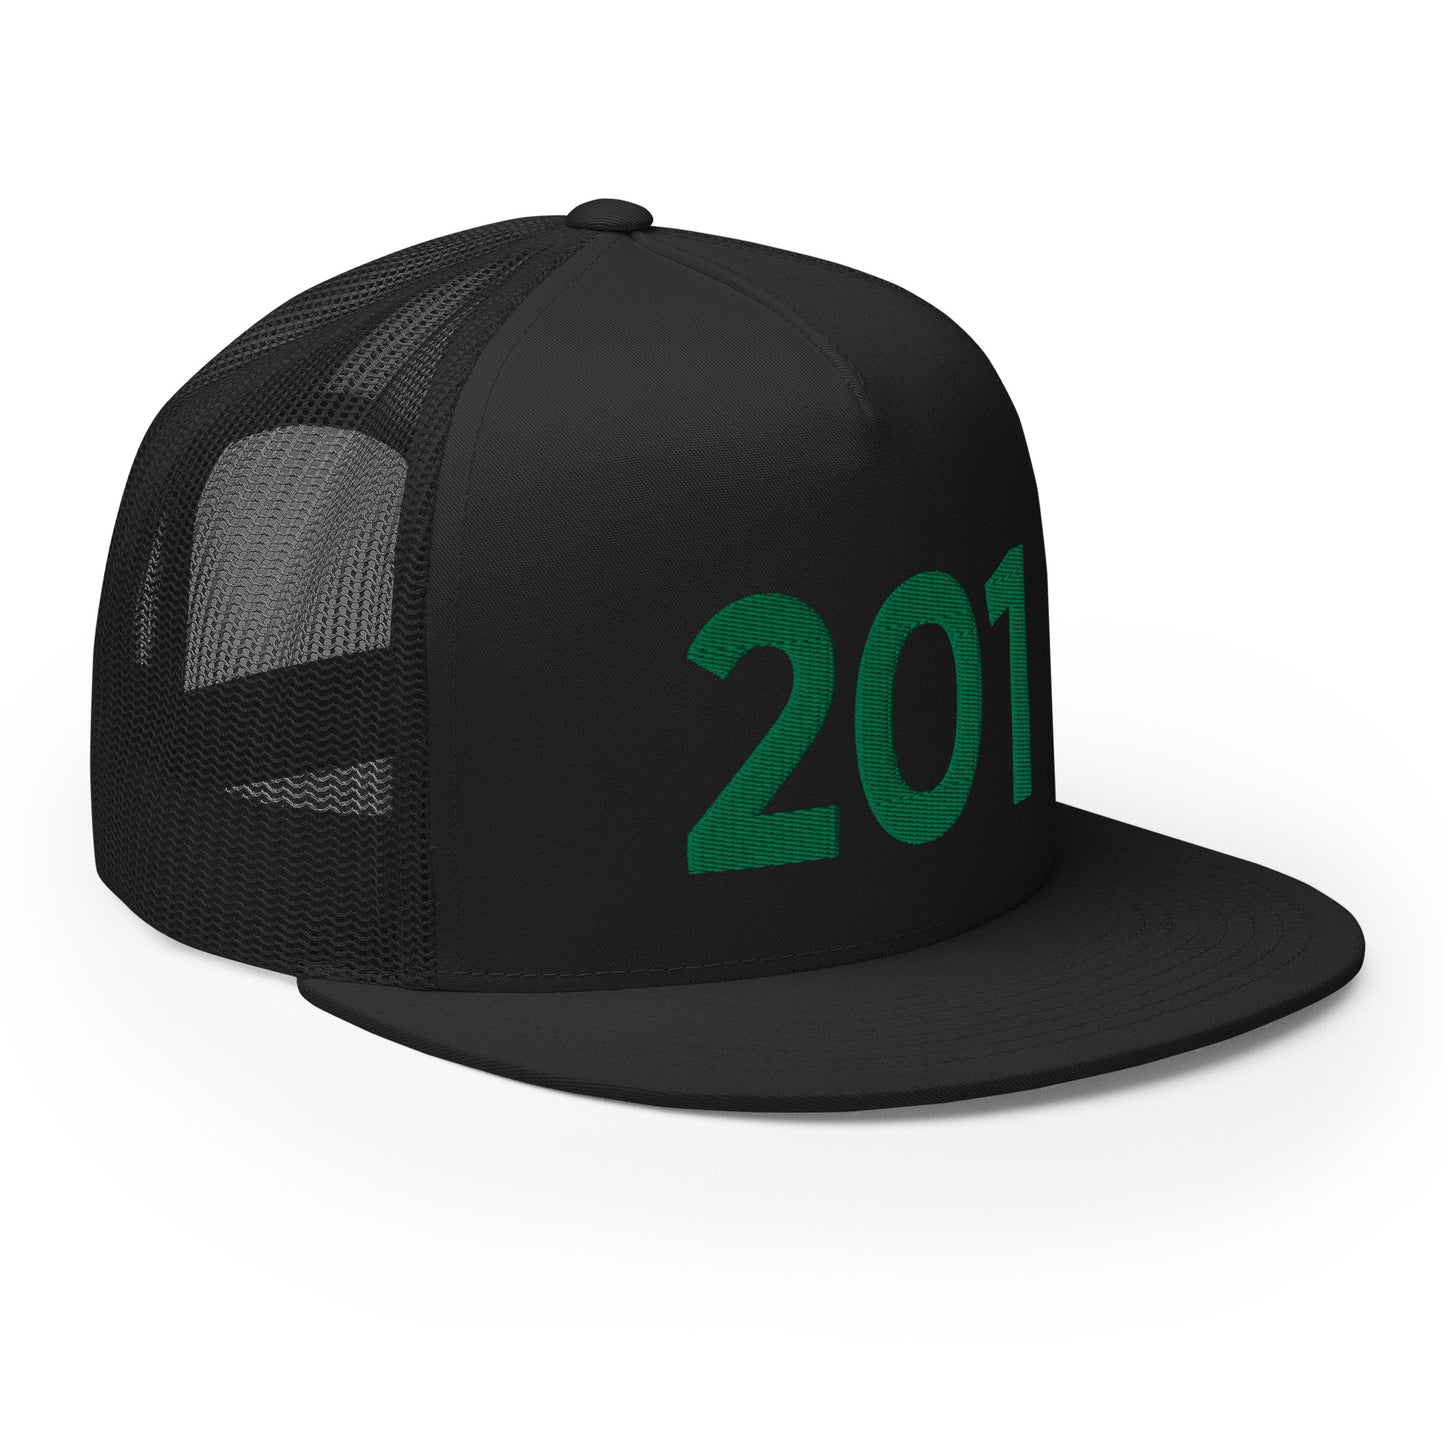 201 NY Faithful Trucker Hat